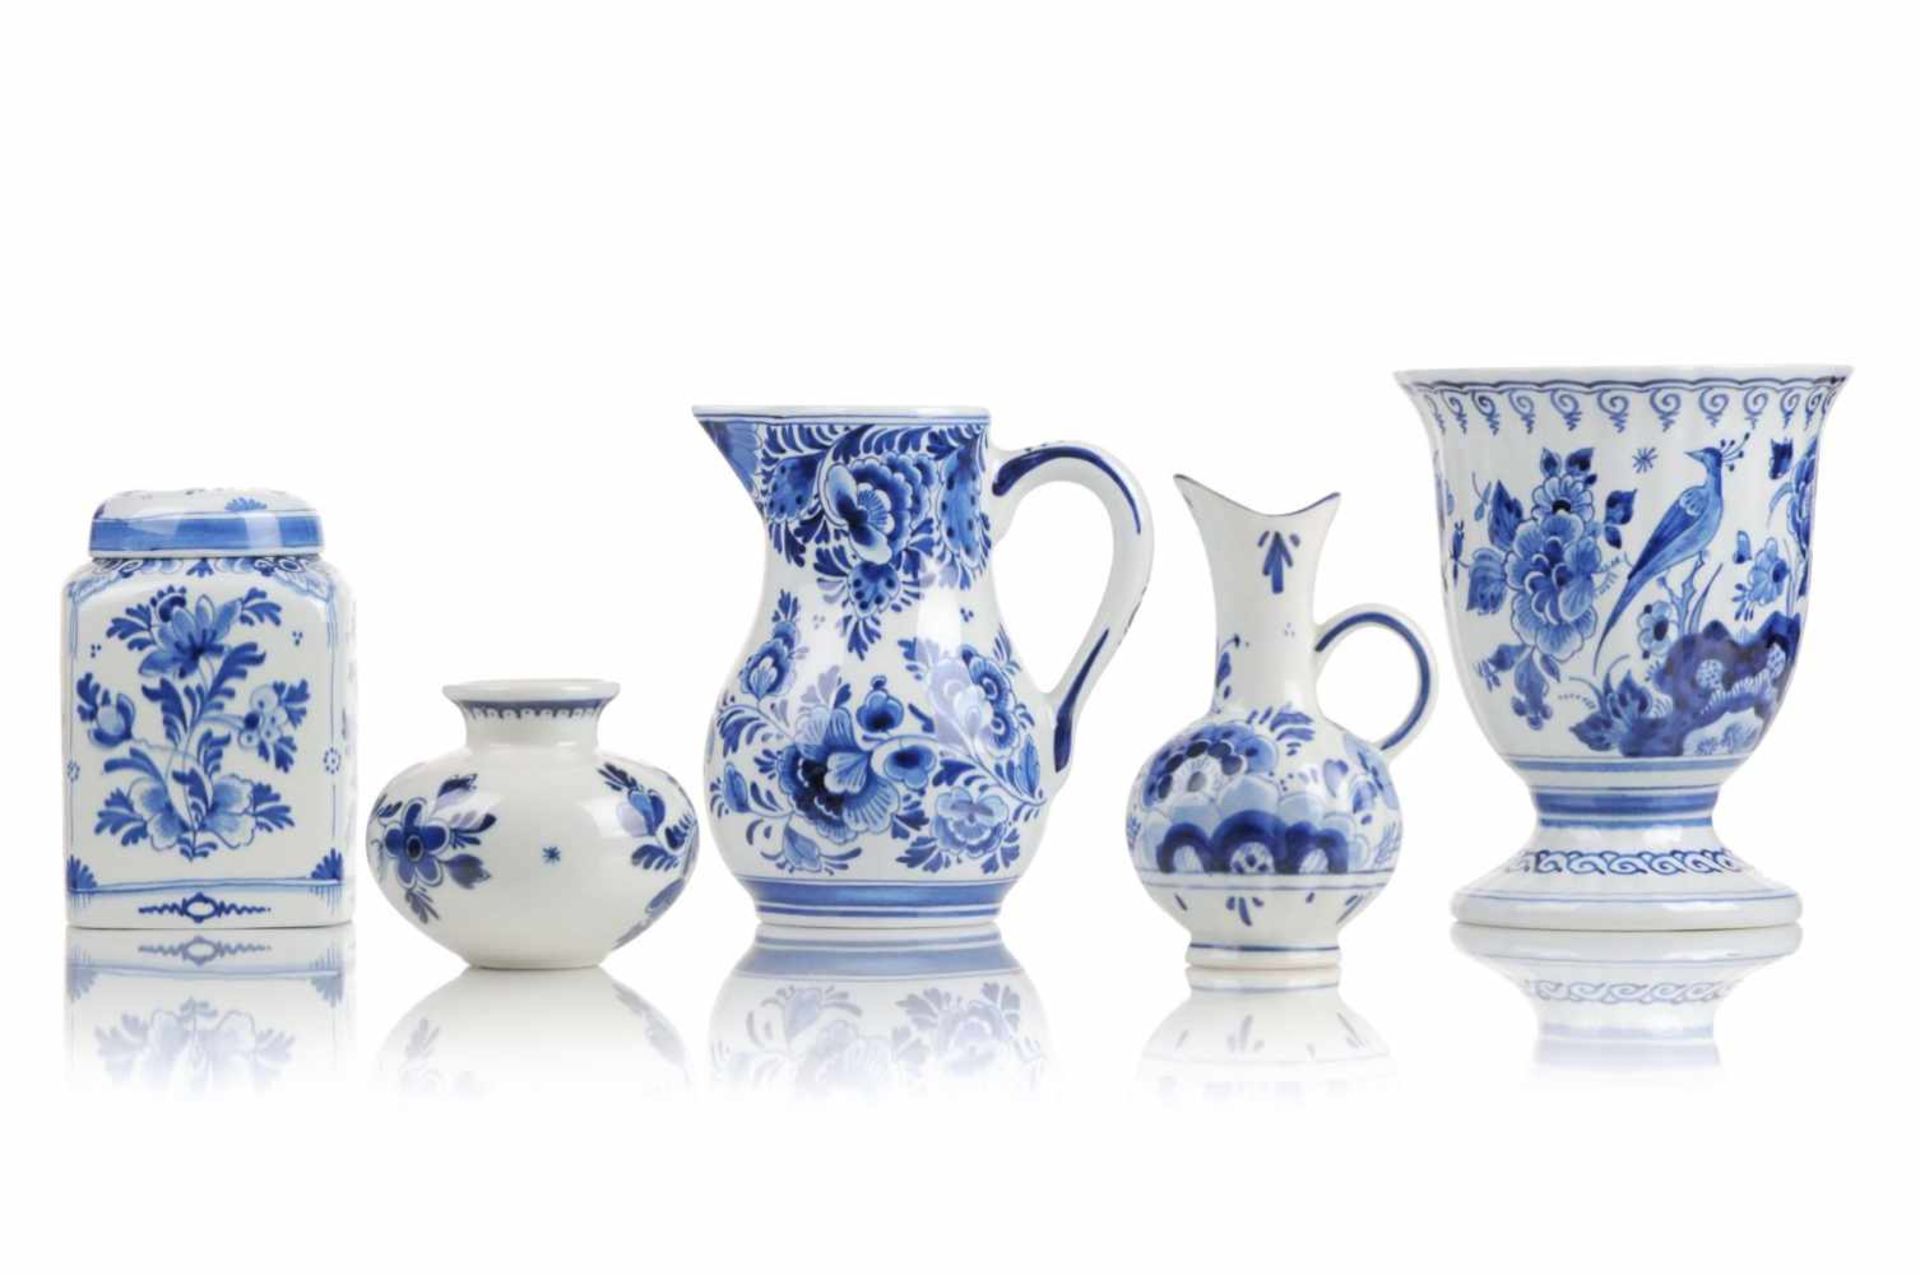 Zwei Kännchen / zwei Vasen / eine Deckeldose. De Porceleyne Fles sowie Delfts Blauw, Holland. Um